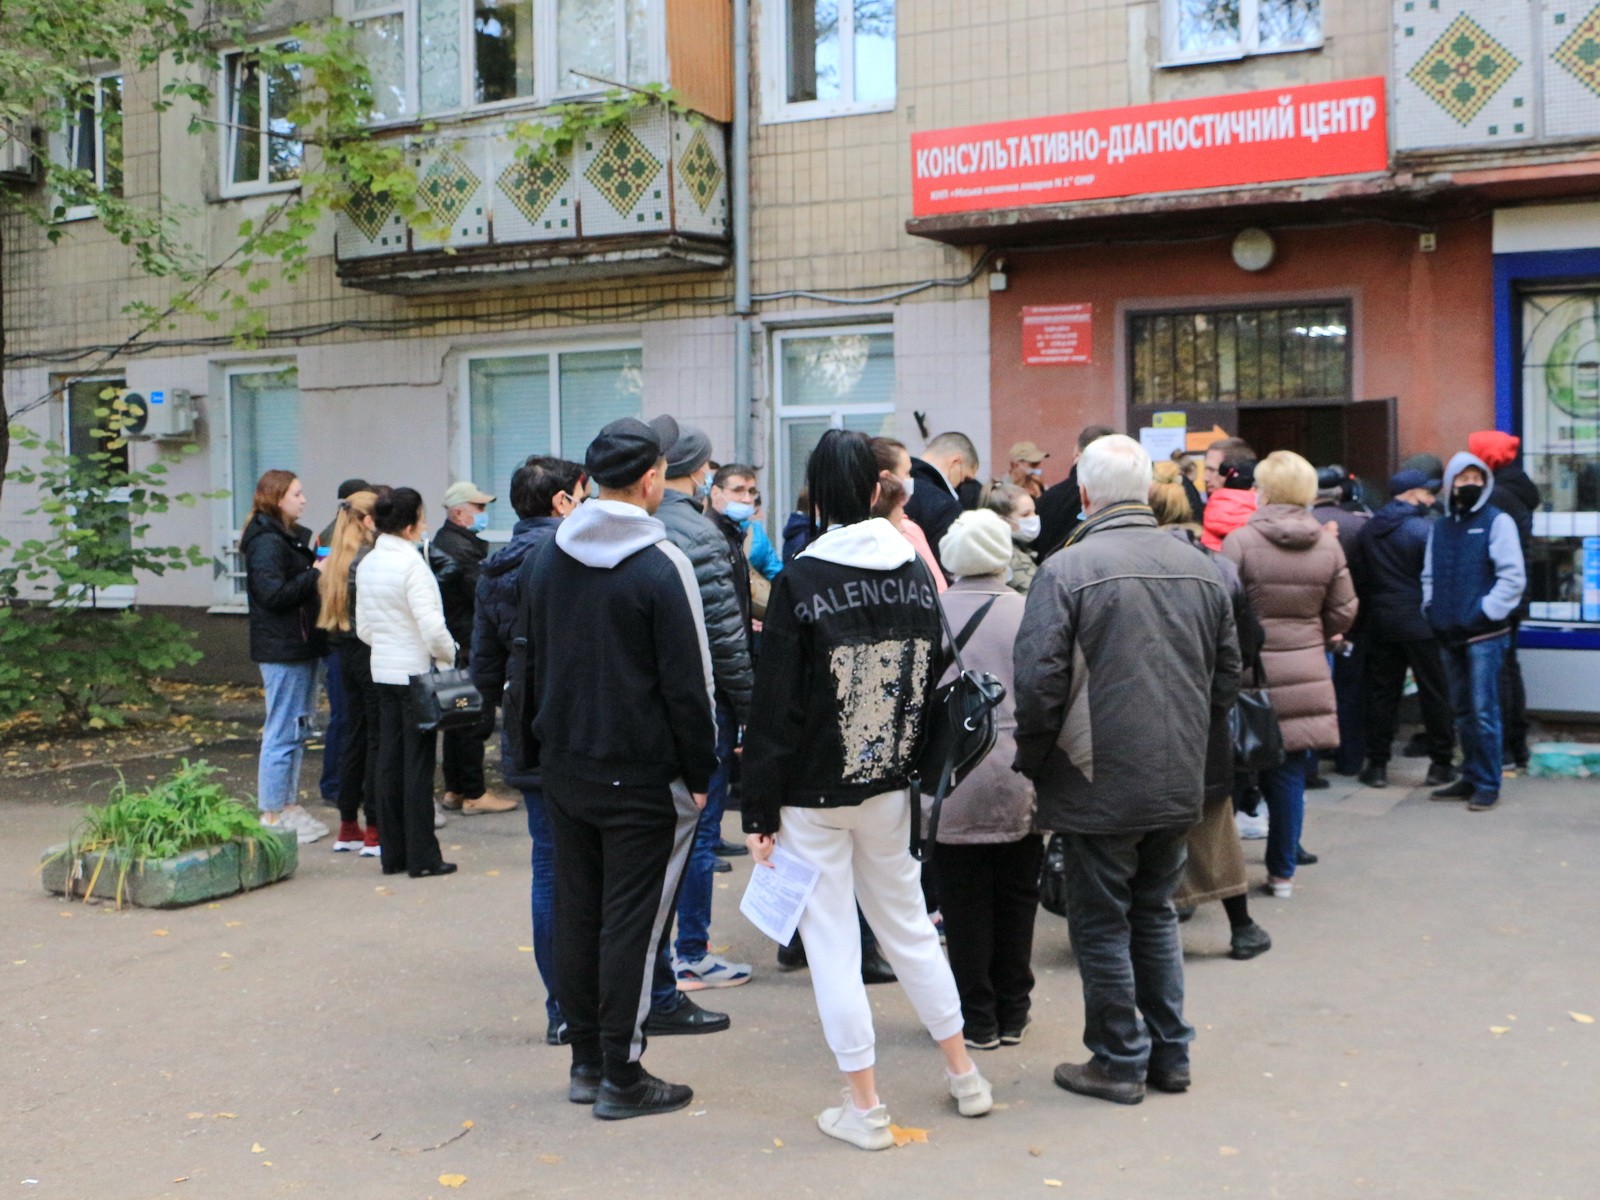 Украинцы начали массово вакцинироваться. За три дня – под 700 000 человек: фото очередей 